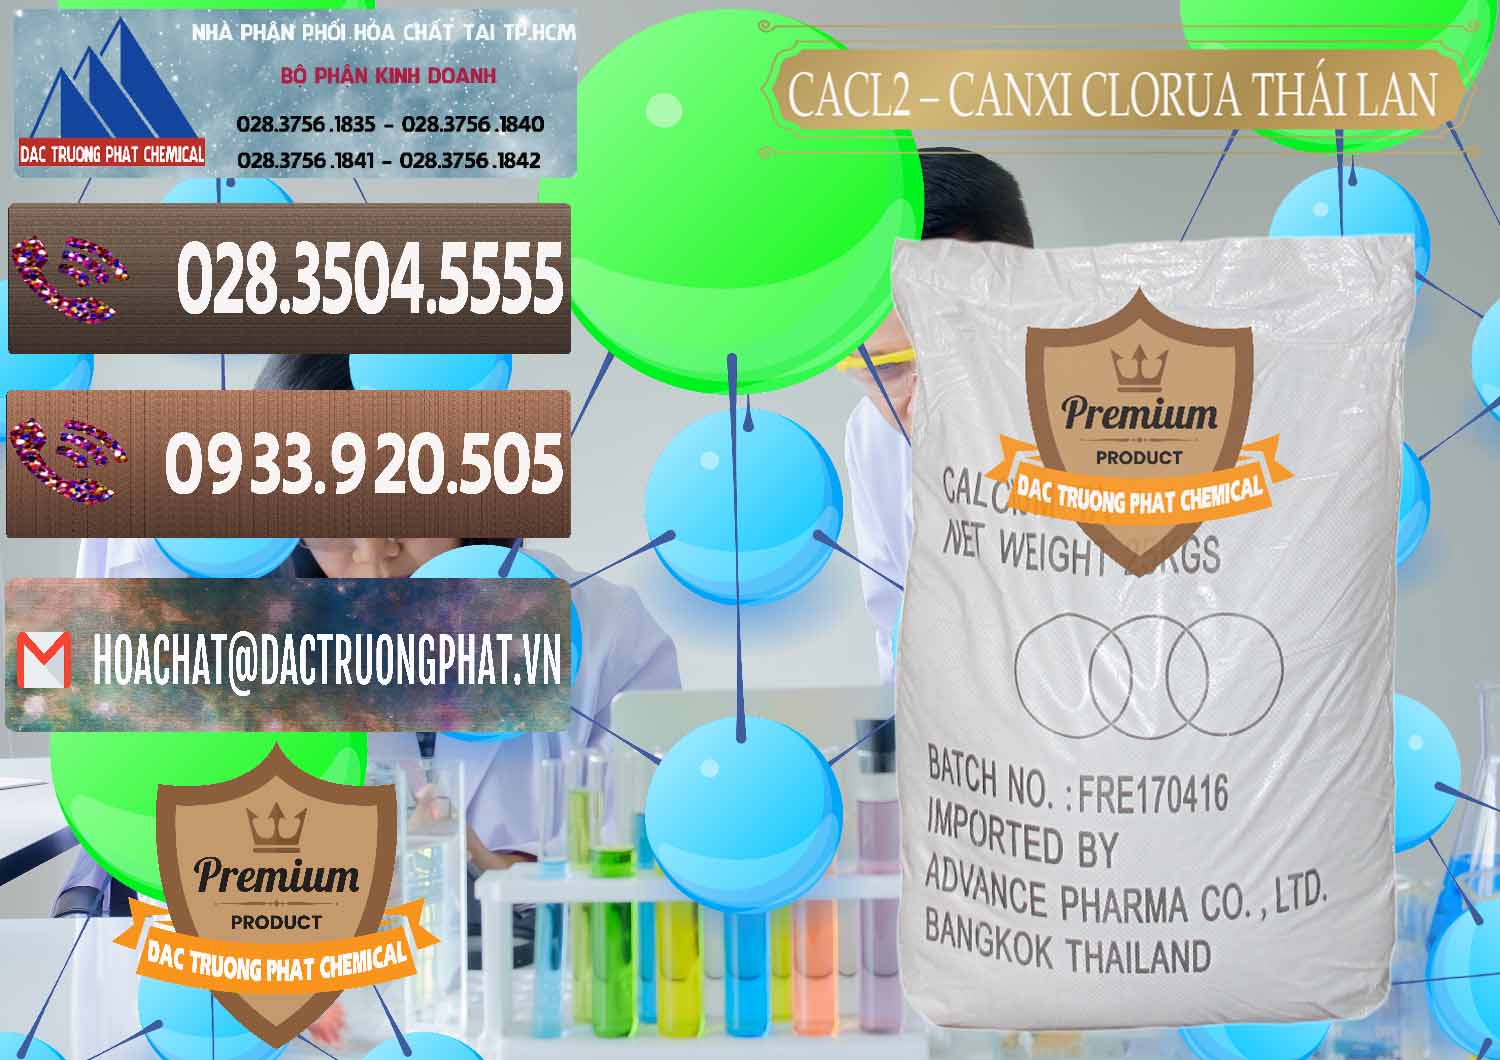 Cty chuyên bán ( cung cấp ) CaCl2 – Canxi Clorua 96% Thái Lan - 0042 - Kinh doanh _ cung cấp hóa chất tại TP.HCM - hoachatviet.net